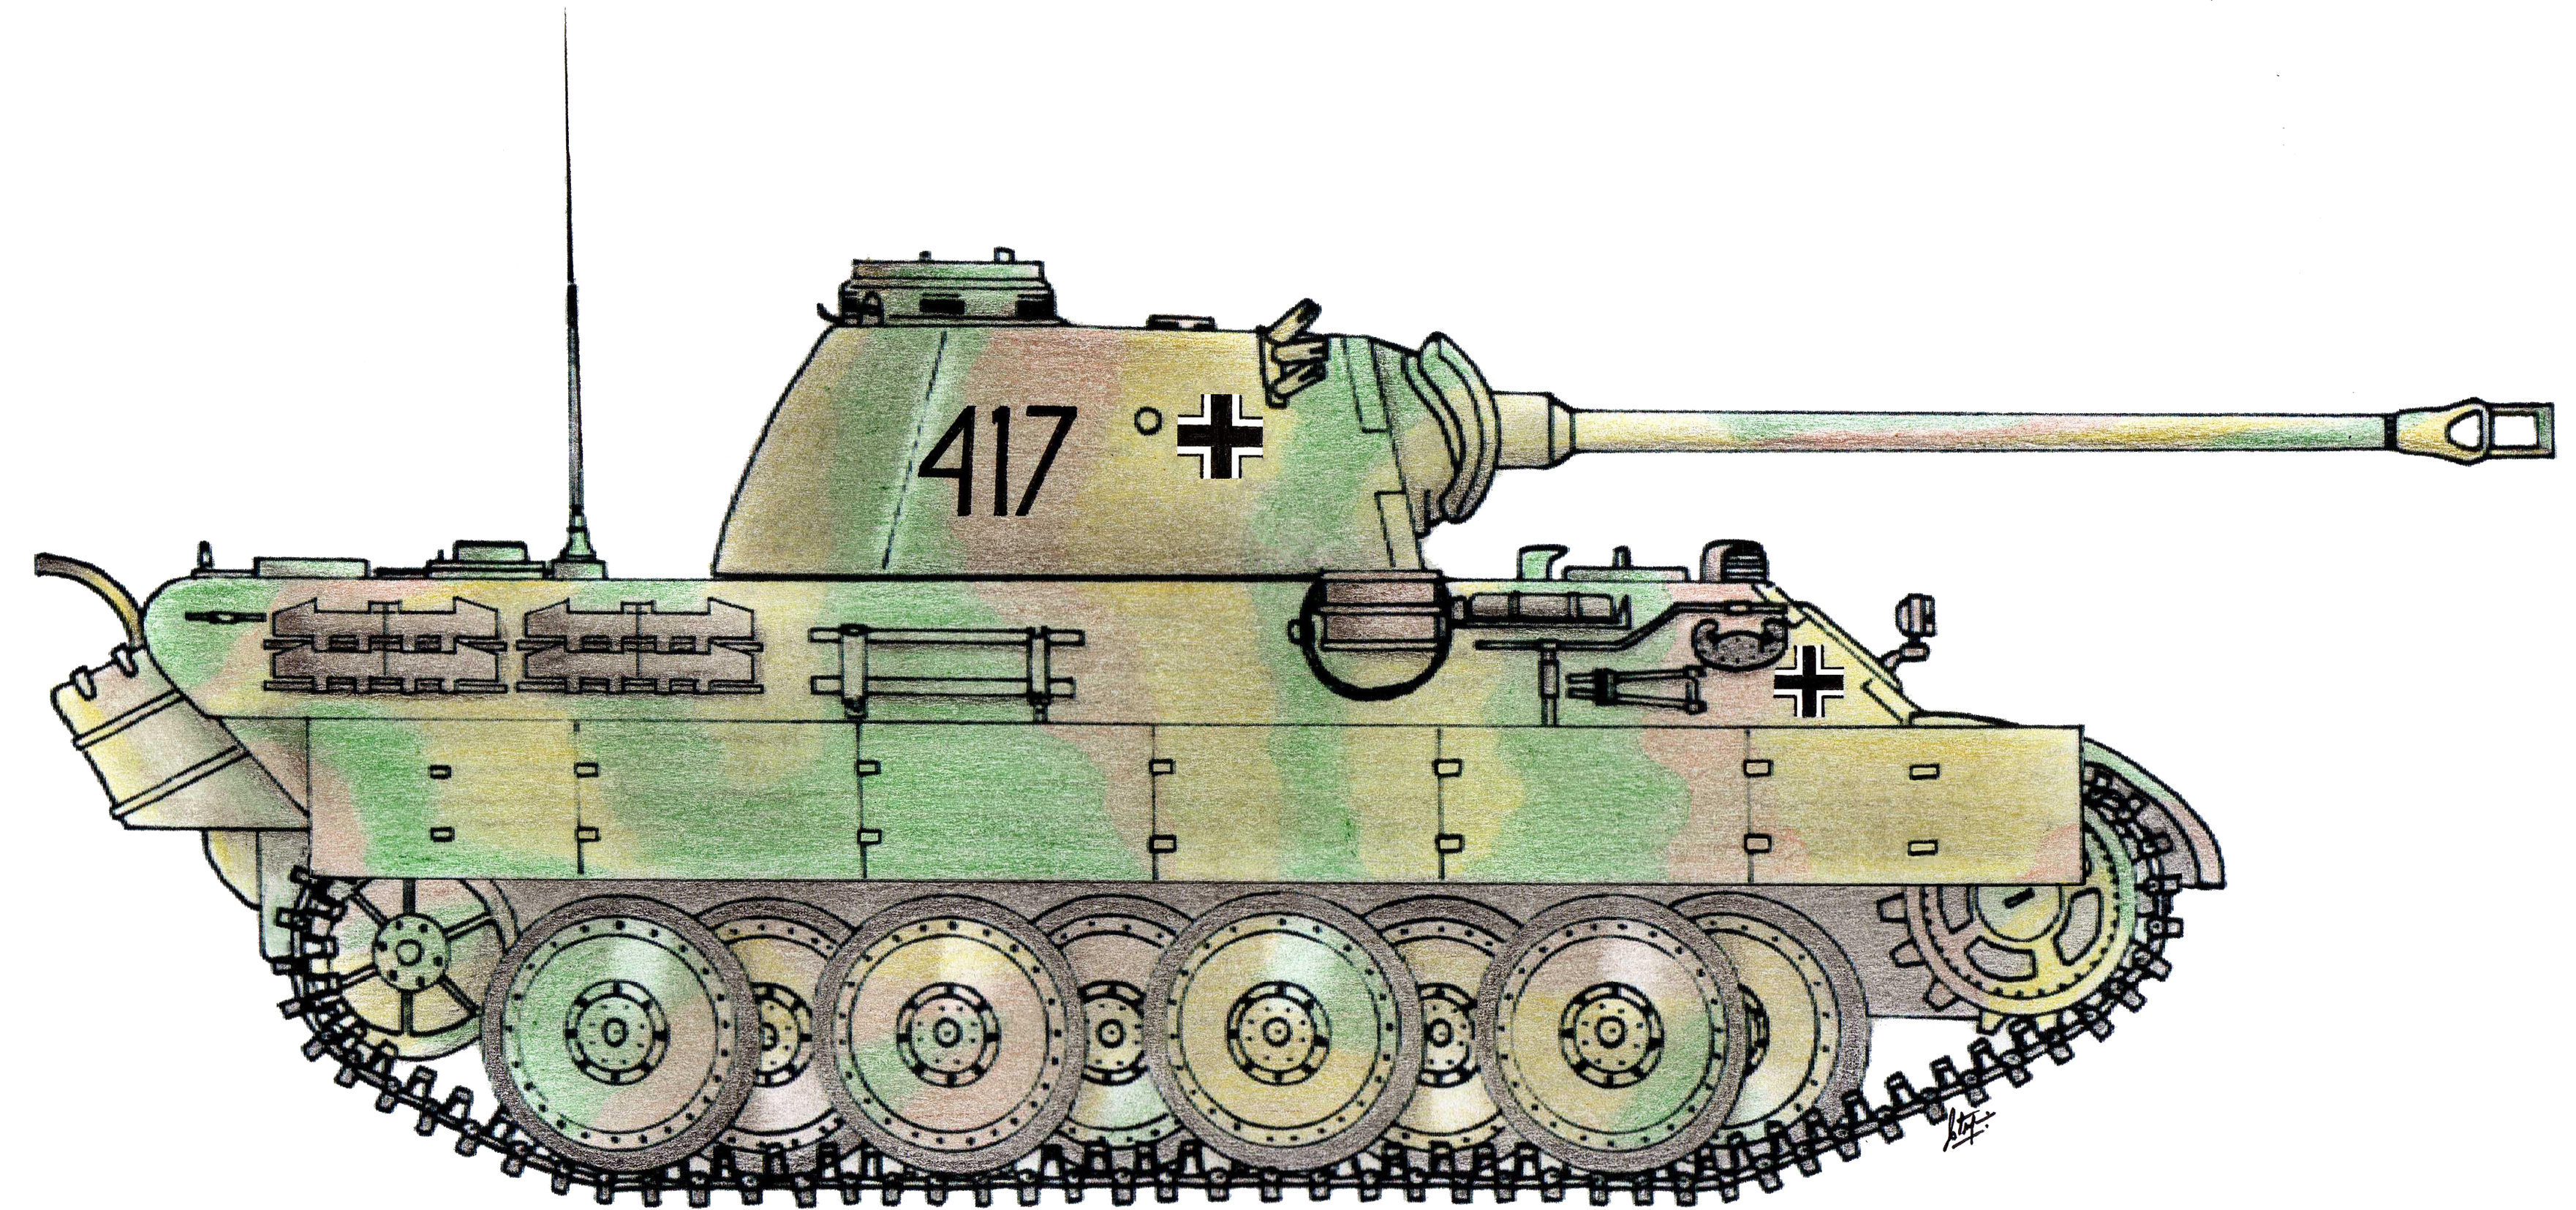 German tank PNG image, armored tank